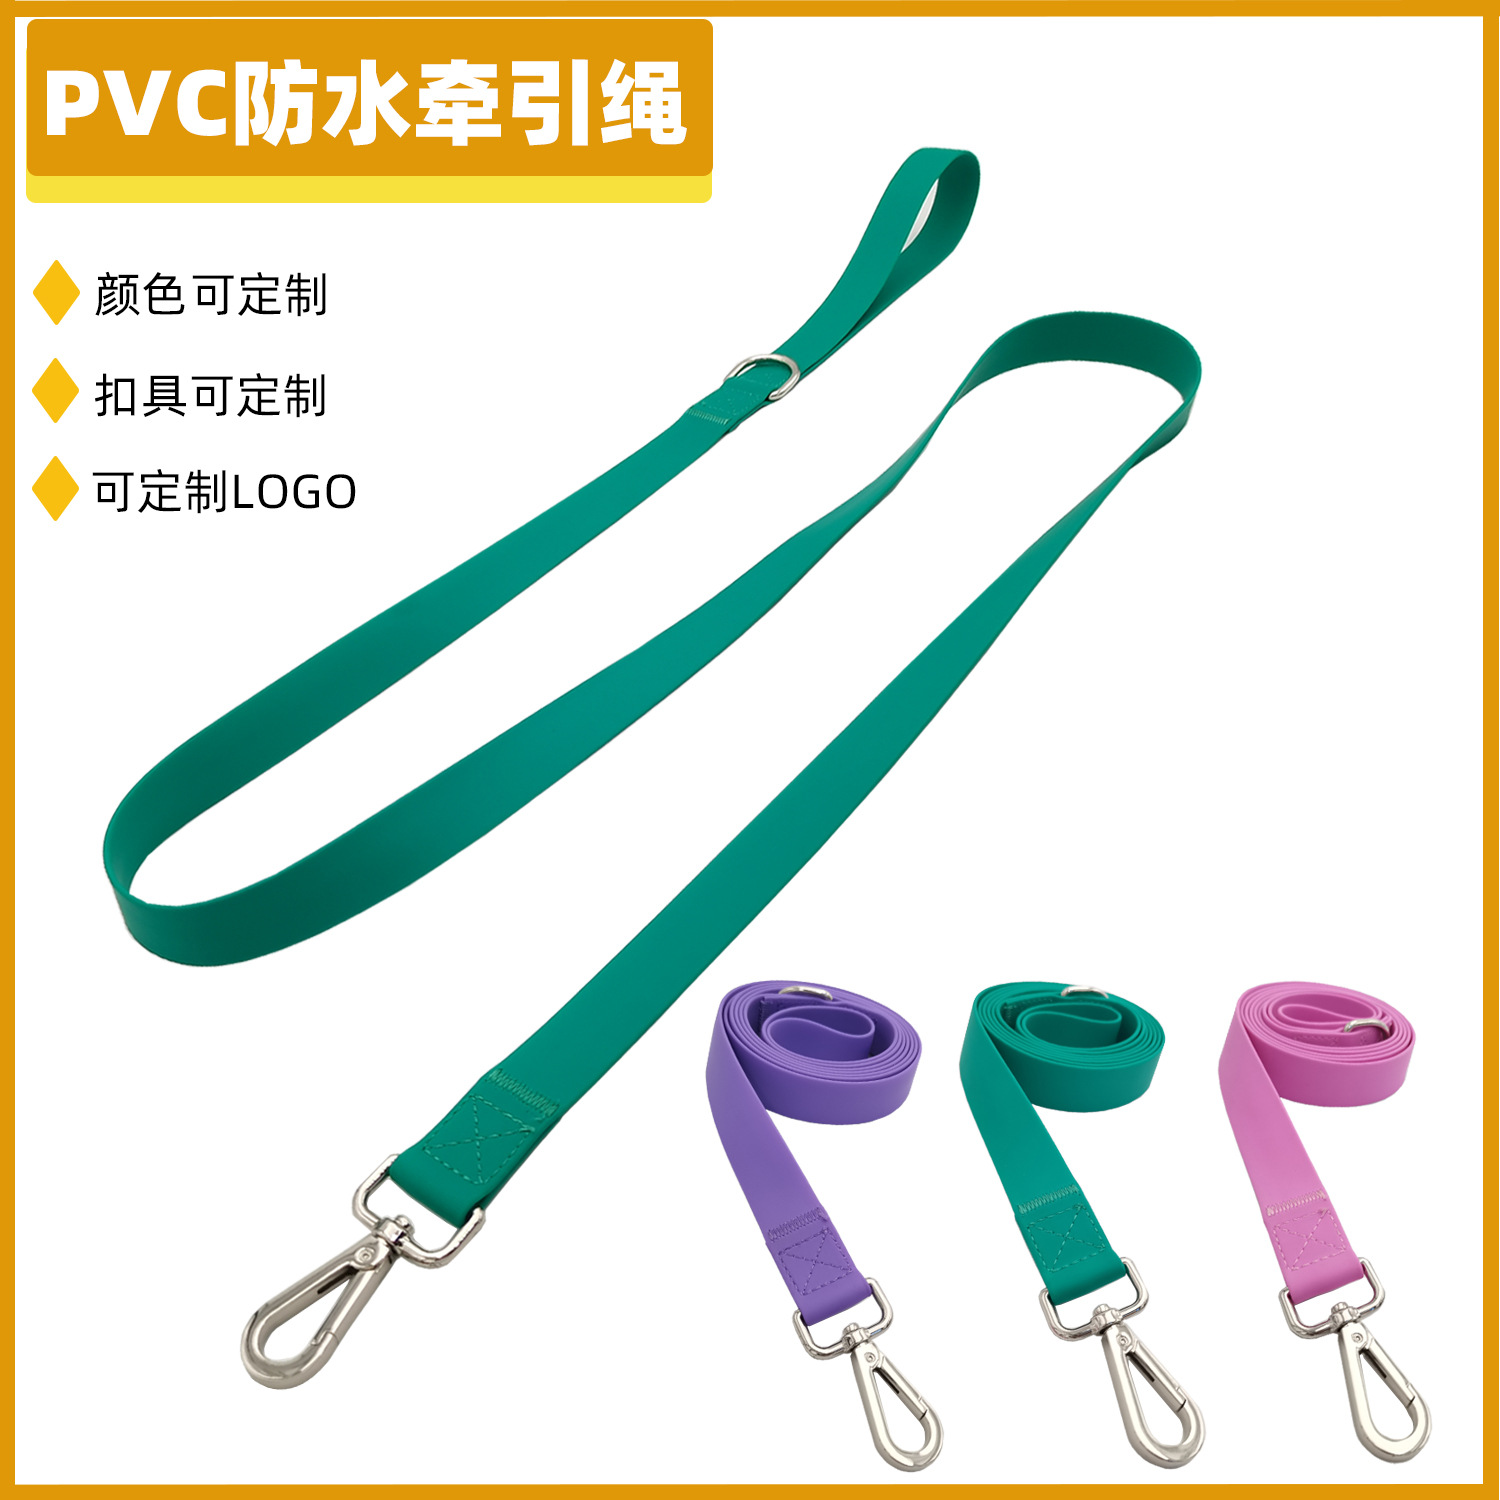 亚马逊狗狗硅胶PVC牵引绳项圈紫色包胶织带防水狗牵引绳宠物用品